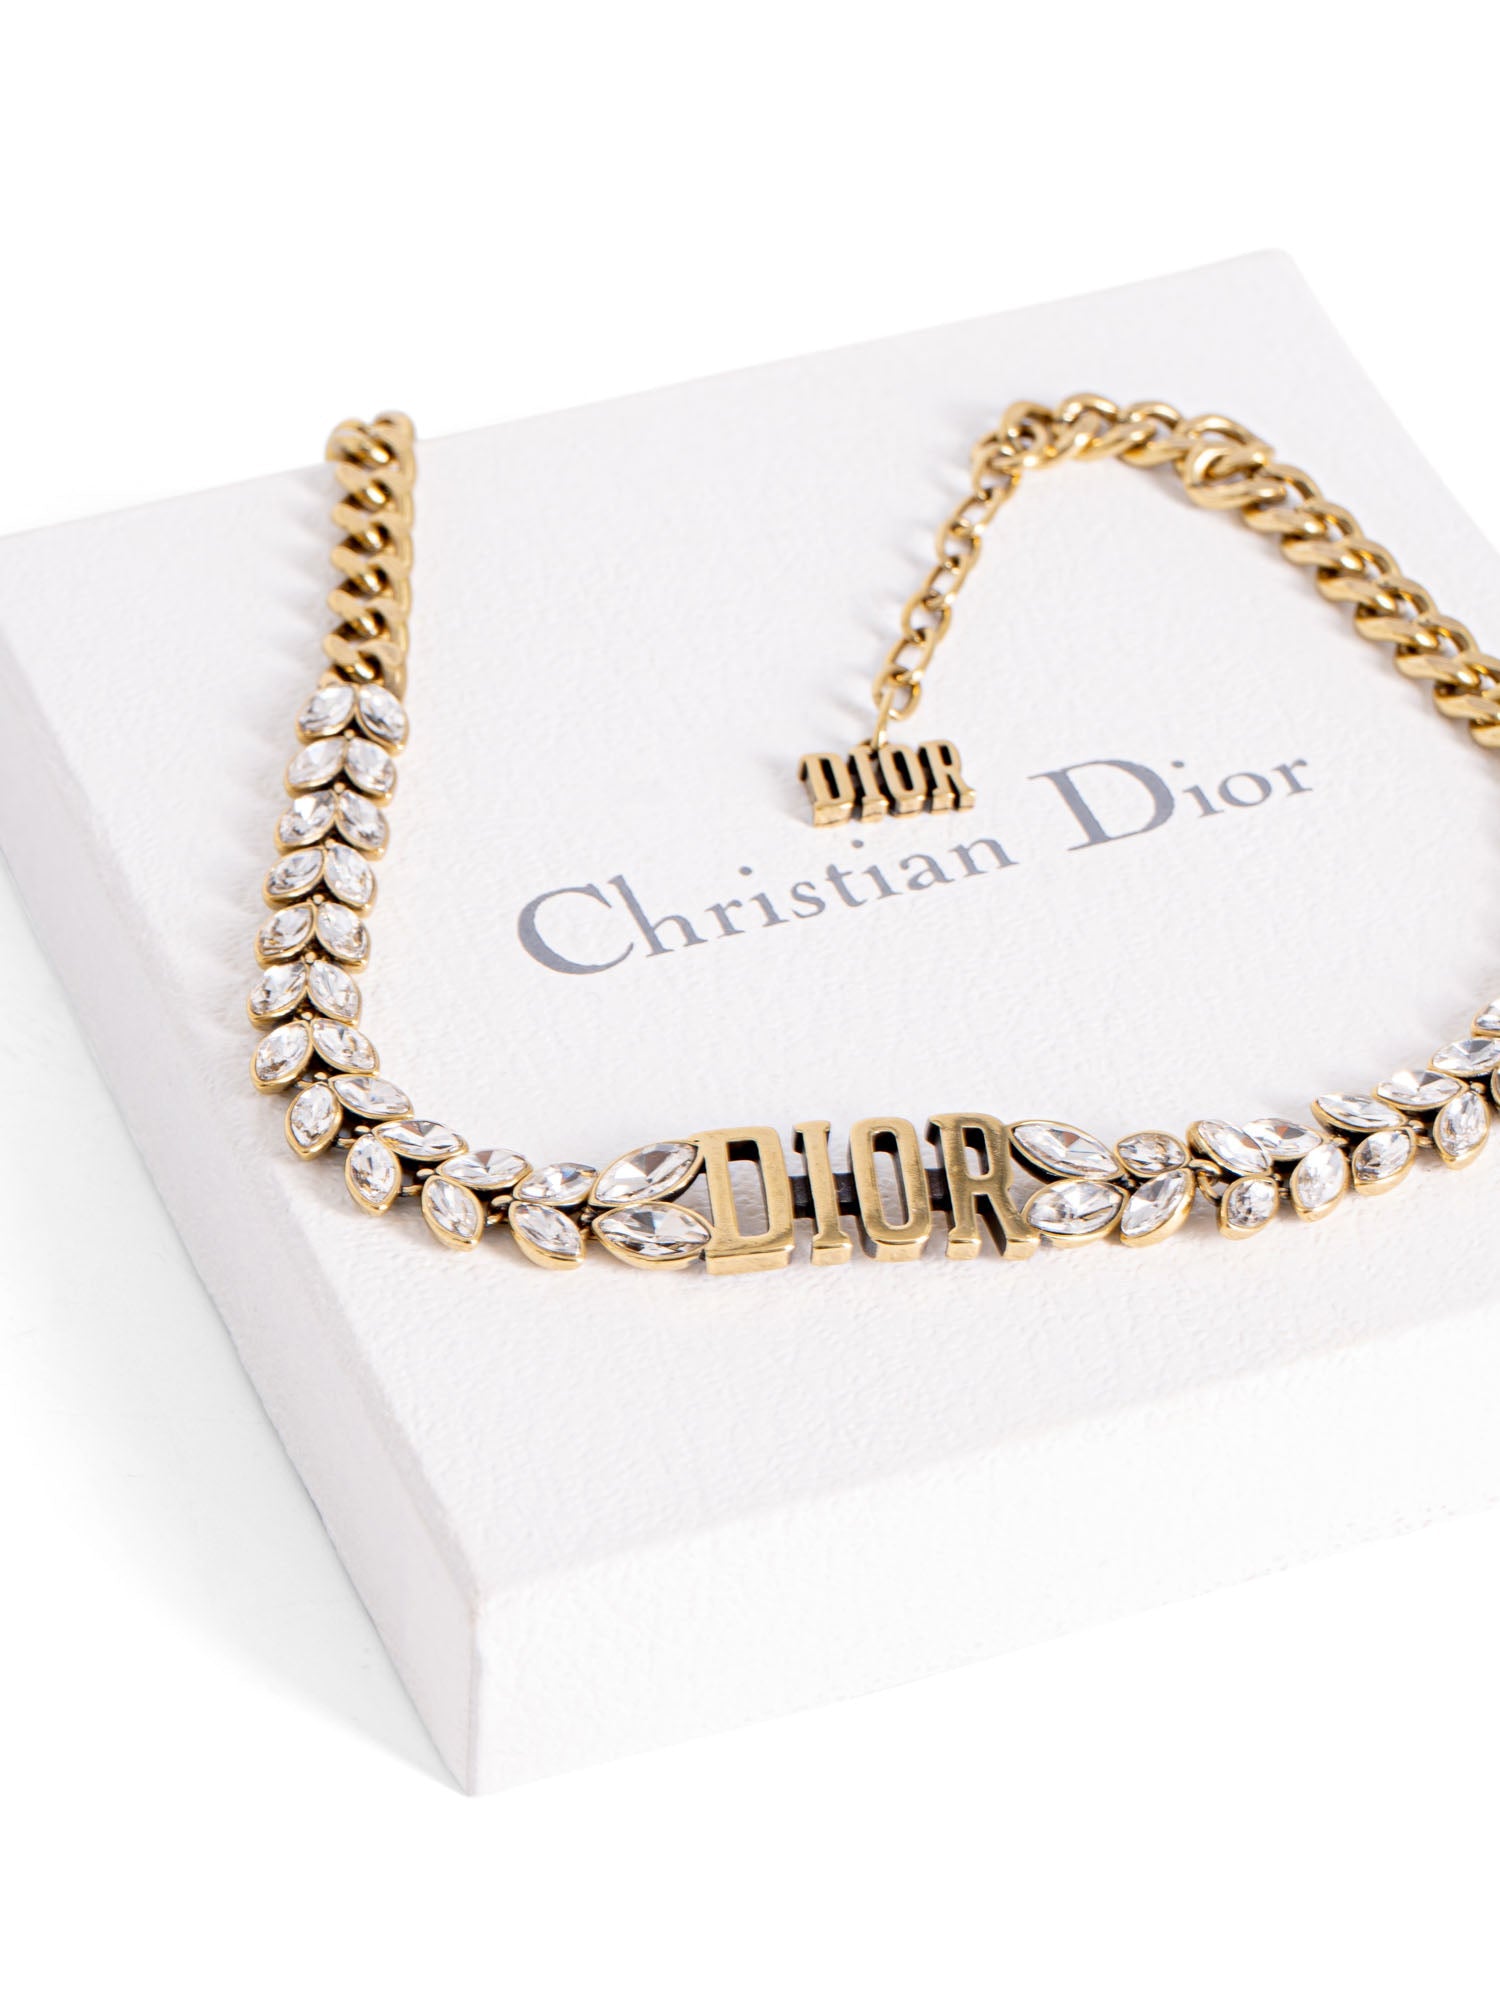 Christian Dior Vintage Logo Laurel Leaf Swarovski Choker Necklace Gold-designer resale